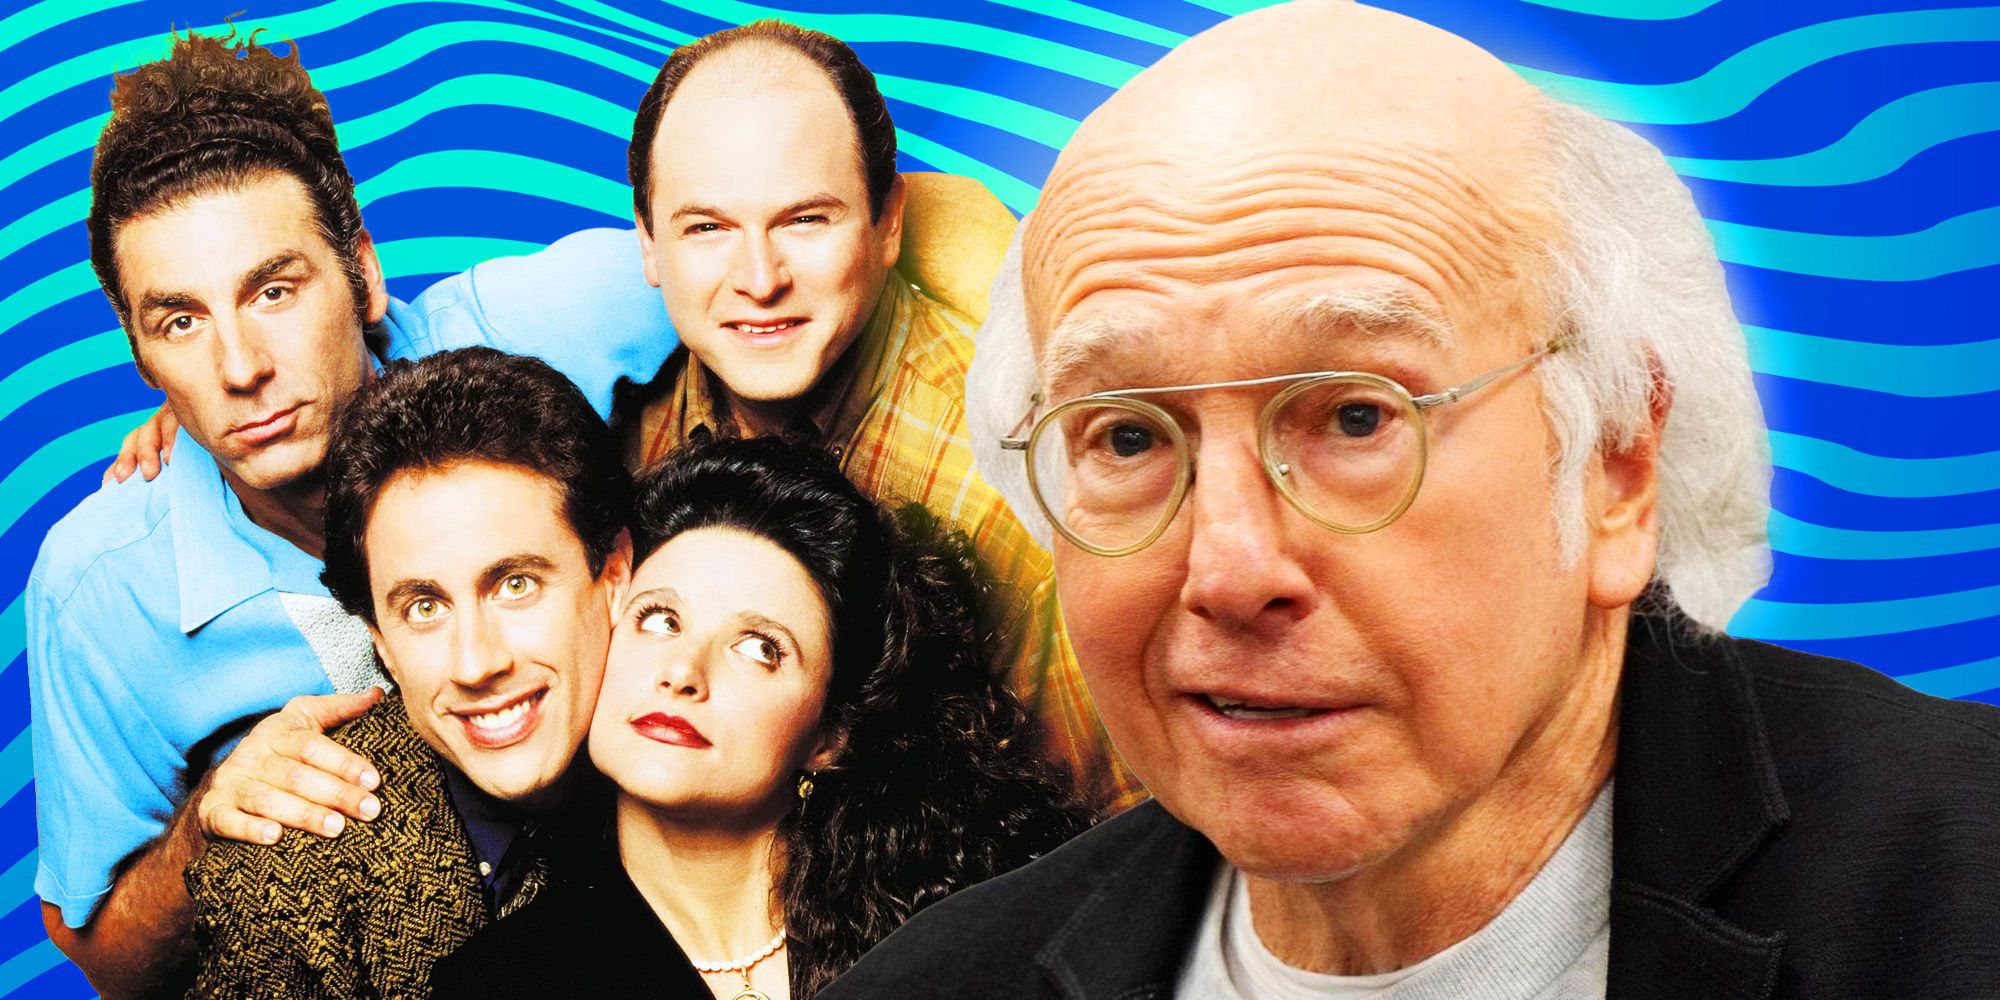 Larry David confirma las enormes teorías del final de Seinfeld en el final de la serie Curb Your Enthusiasm (con un giro)